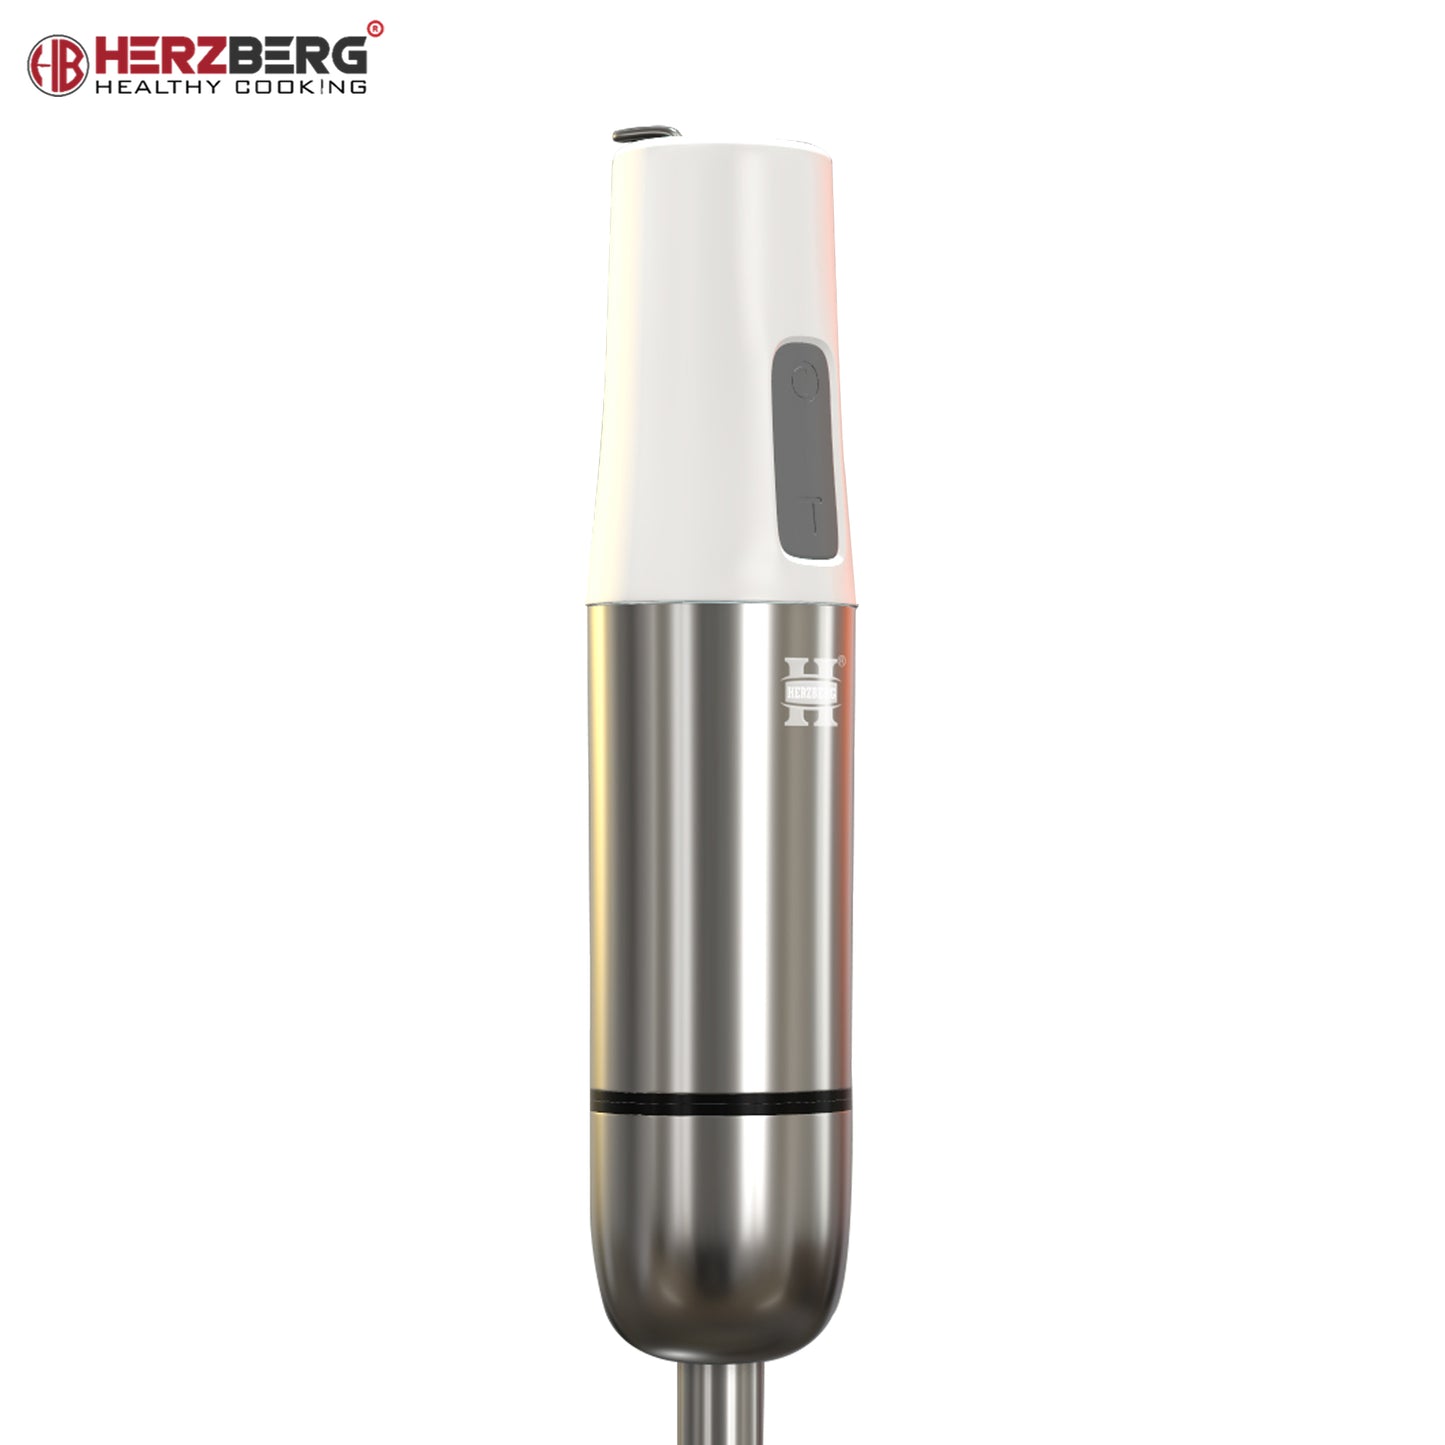 Herzberg Stainless Steel Immersion Hand Blender